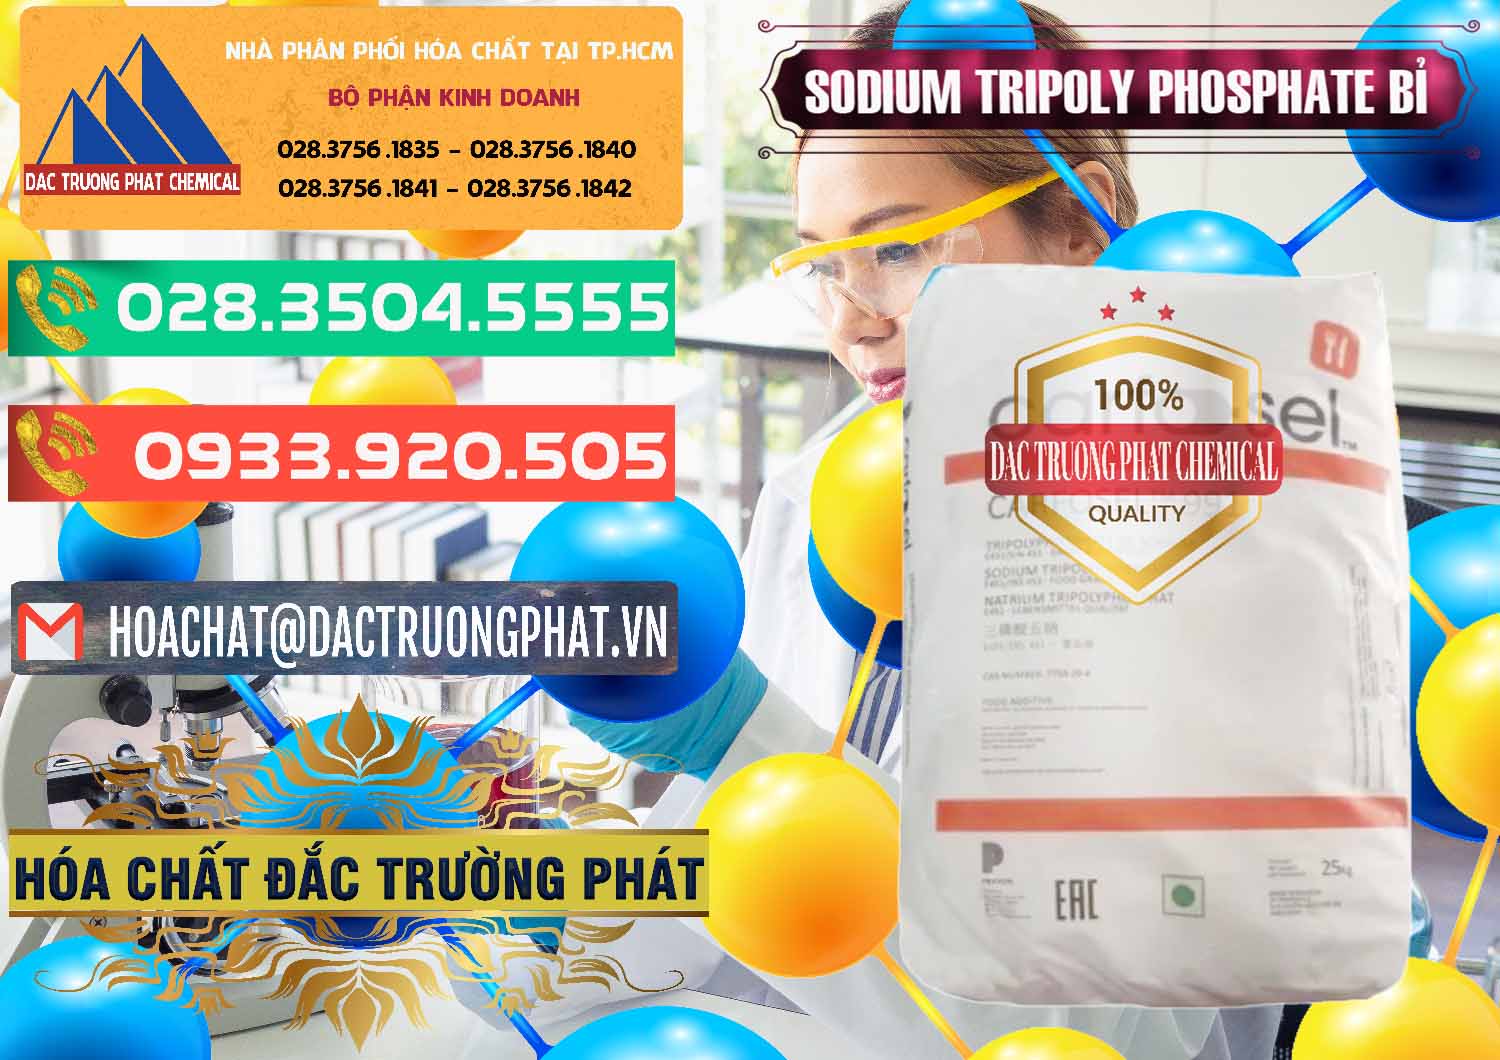 Cty chuyên cung cấp & bán Sodium Tripoly Phosphate - STPP Carfosel 991 Bỉ Belgium - 0429 - Đơn vị phân phối & cung cấp hóa chất tại TP.HCM - congtyhoachat.com.vn